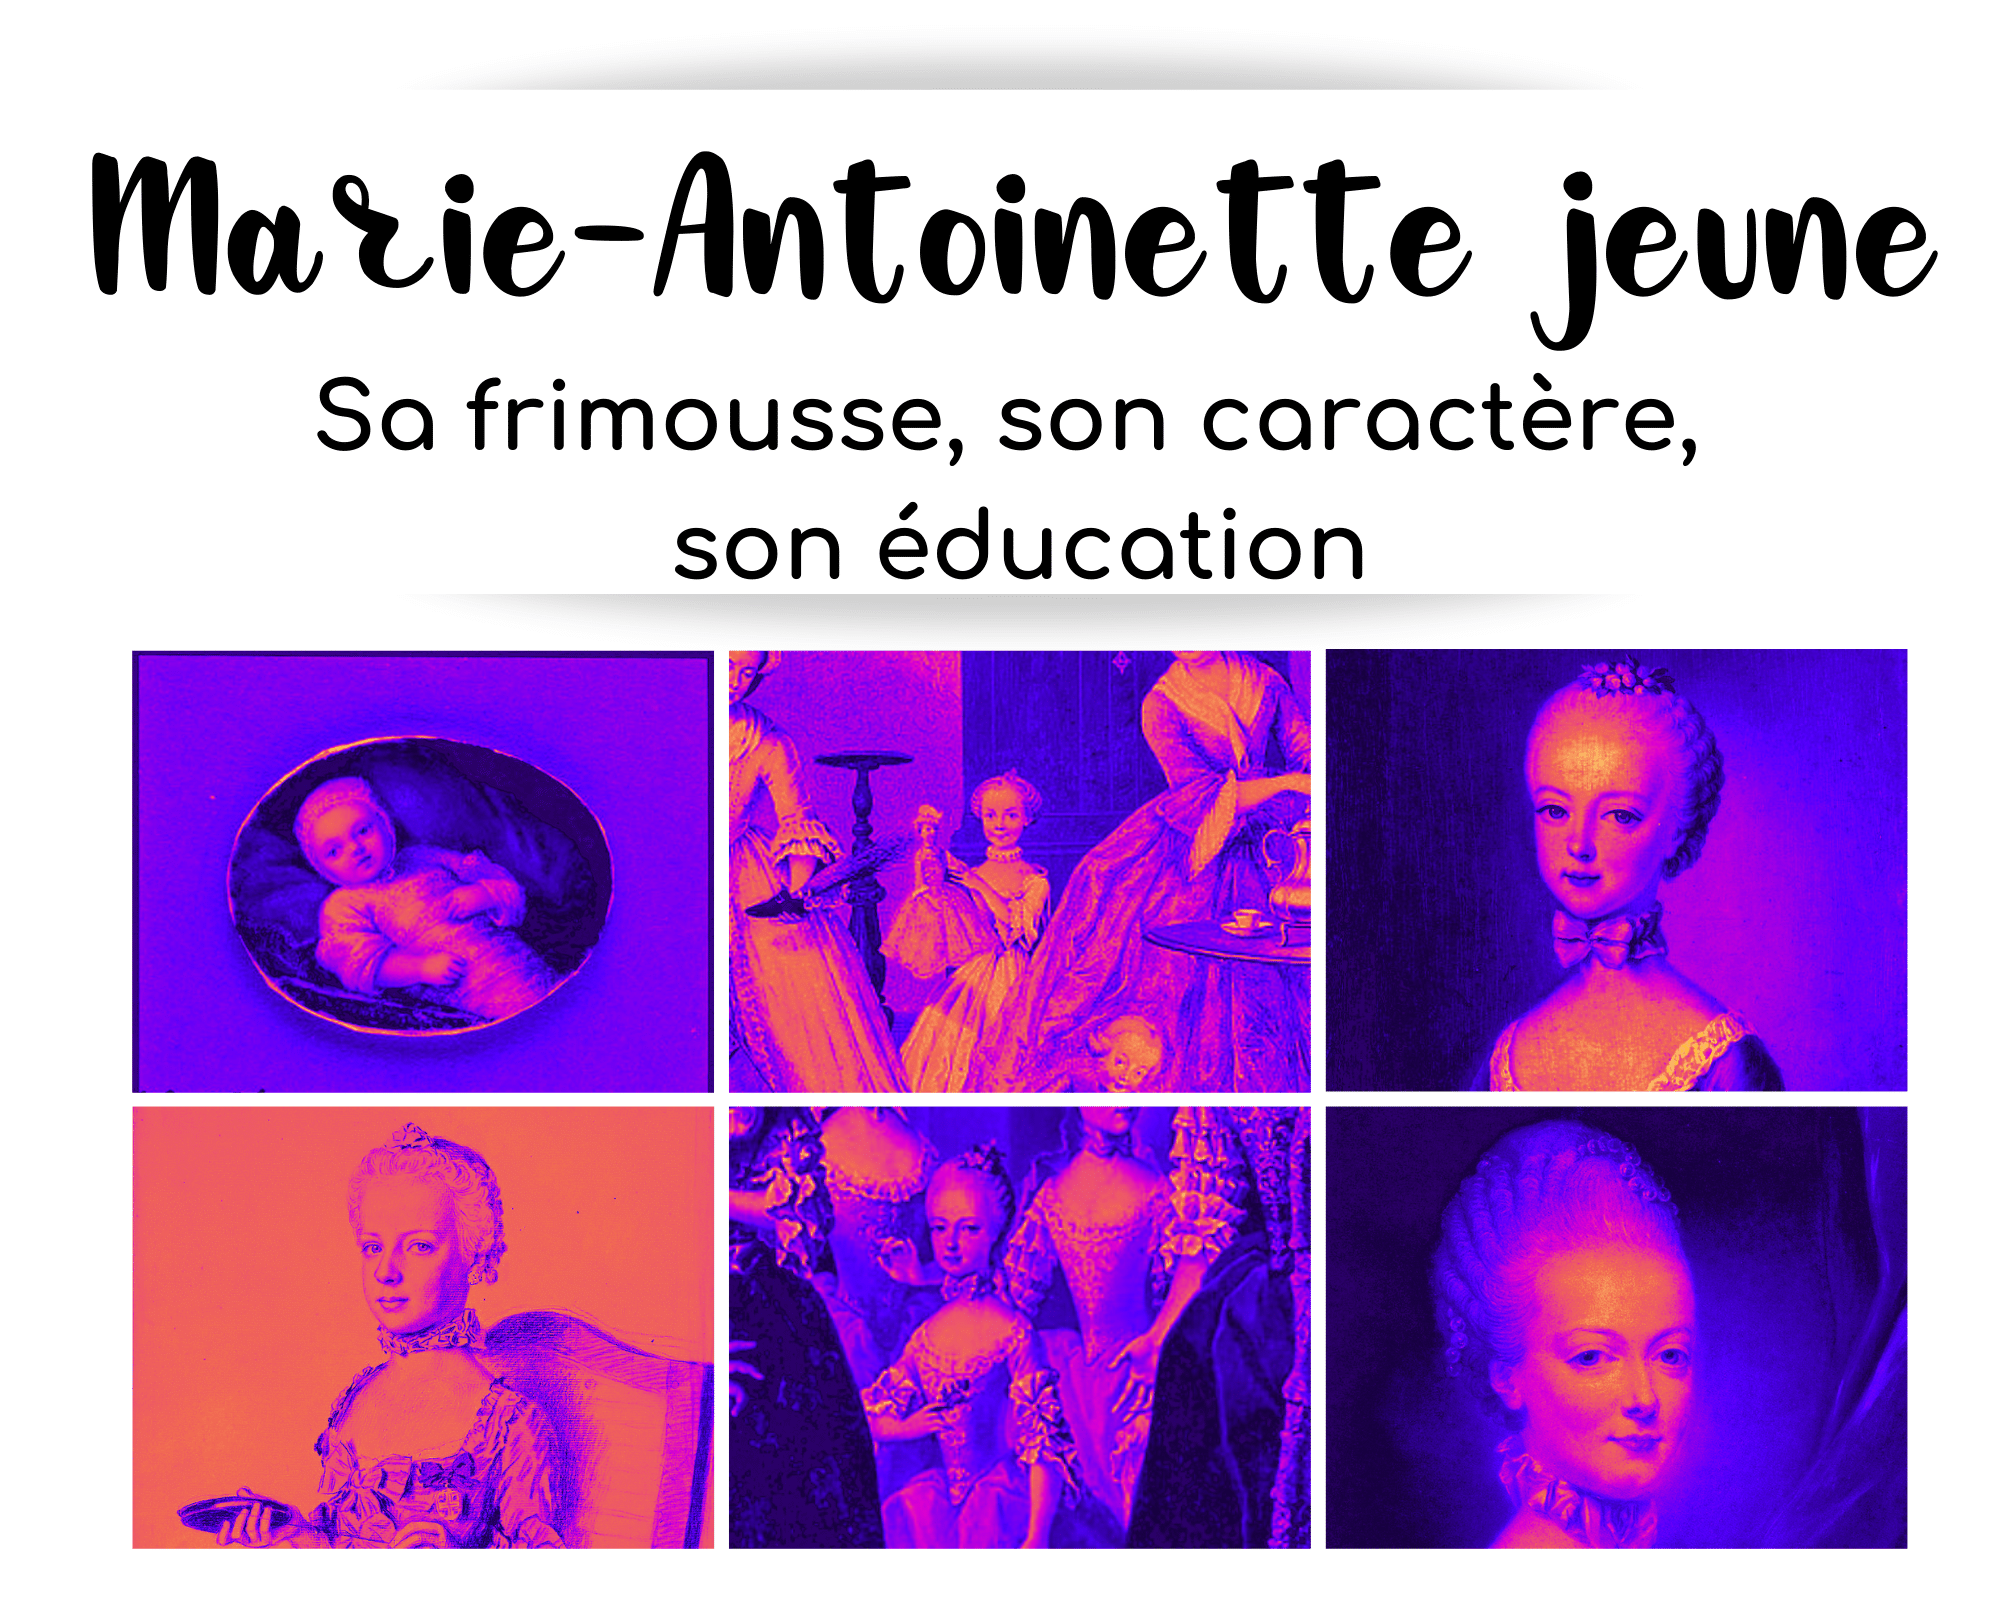 6 portraits de Marie-Antoinette jeune, de la naissance à ses 14 ans